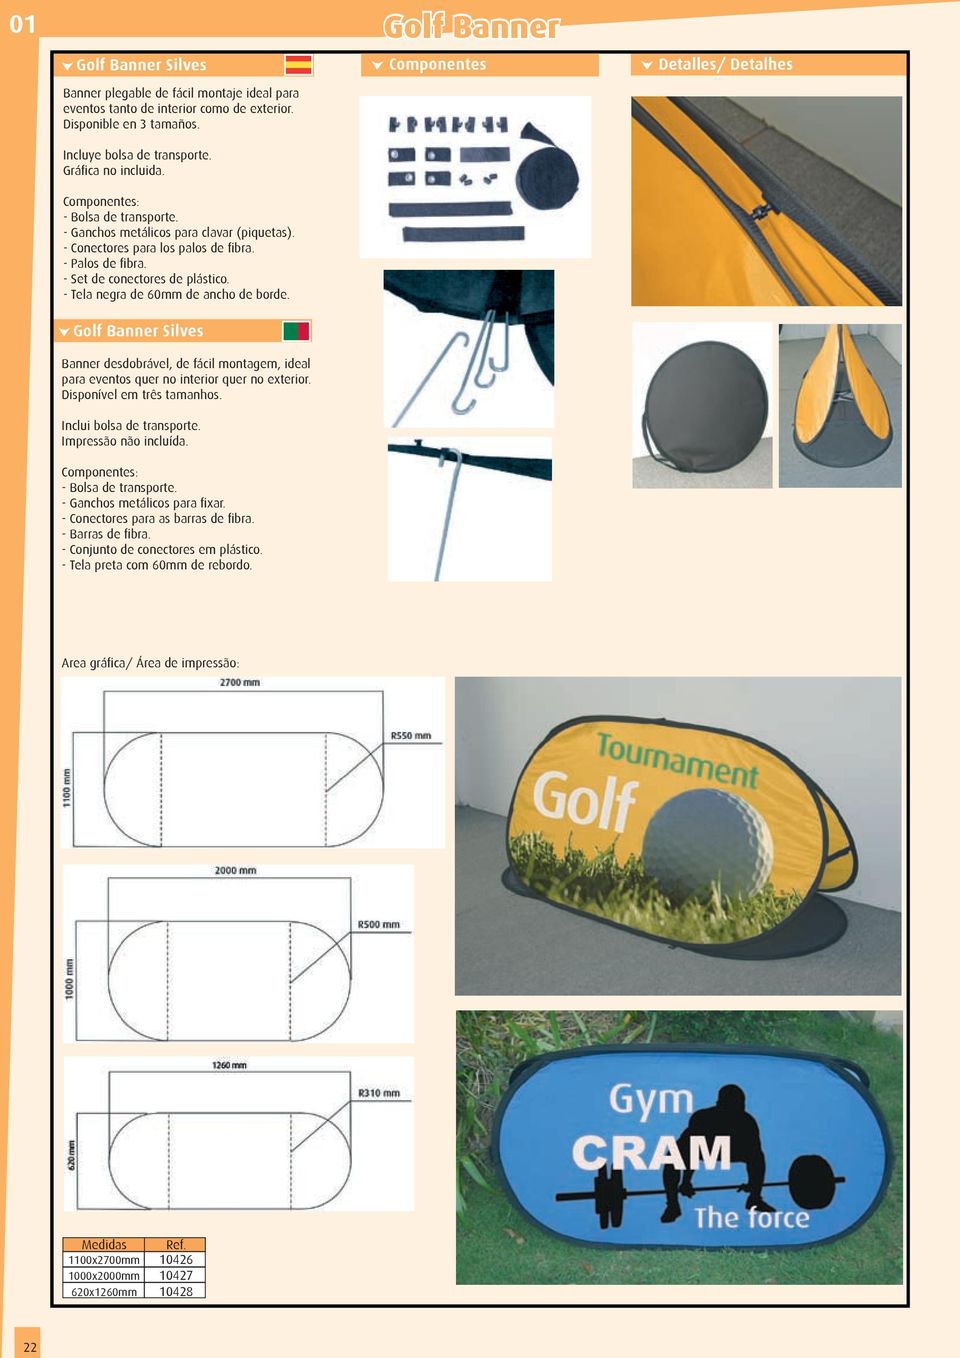 - Tela negra de 60mm de ancho de borde. Golf Banner Silves Banner desdobrável, de fácil montagem, ideal para eventos quer no interior quer no exterior. Disponível em três tamanhos.